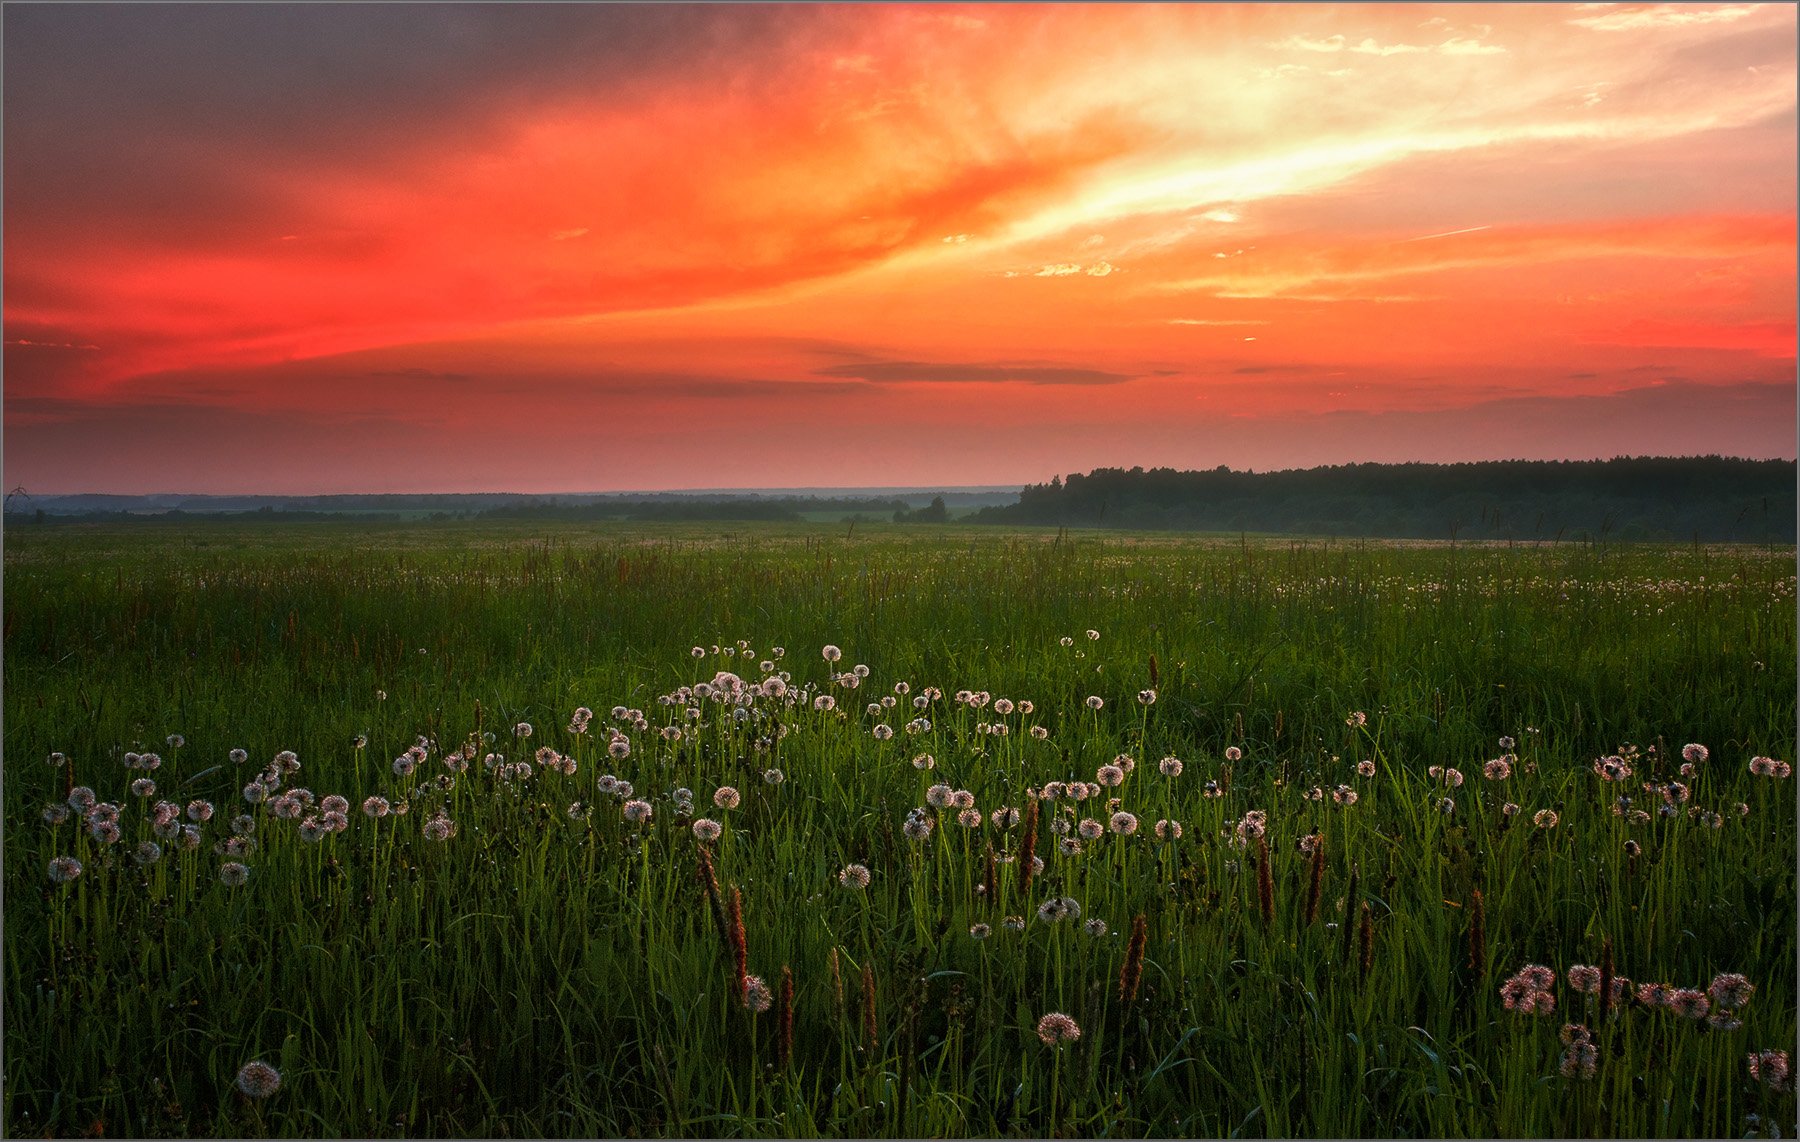 Летний вечер был у нас с тобой. "Летний вечер" (ф.Тютчев, 1828 г.). Трава некошеной межи. Дремотой розовой объята трава некошеной межи.